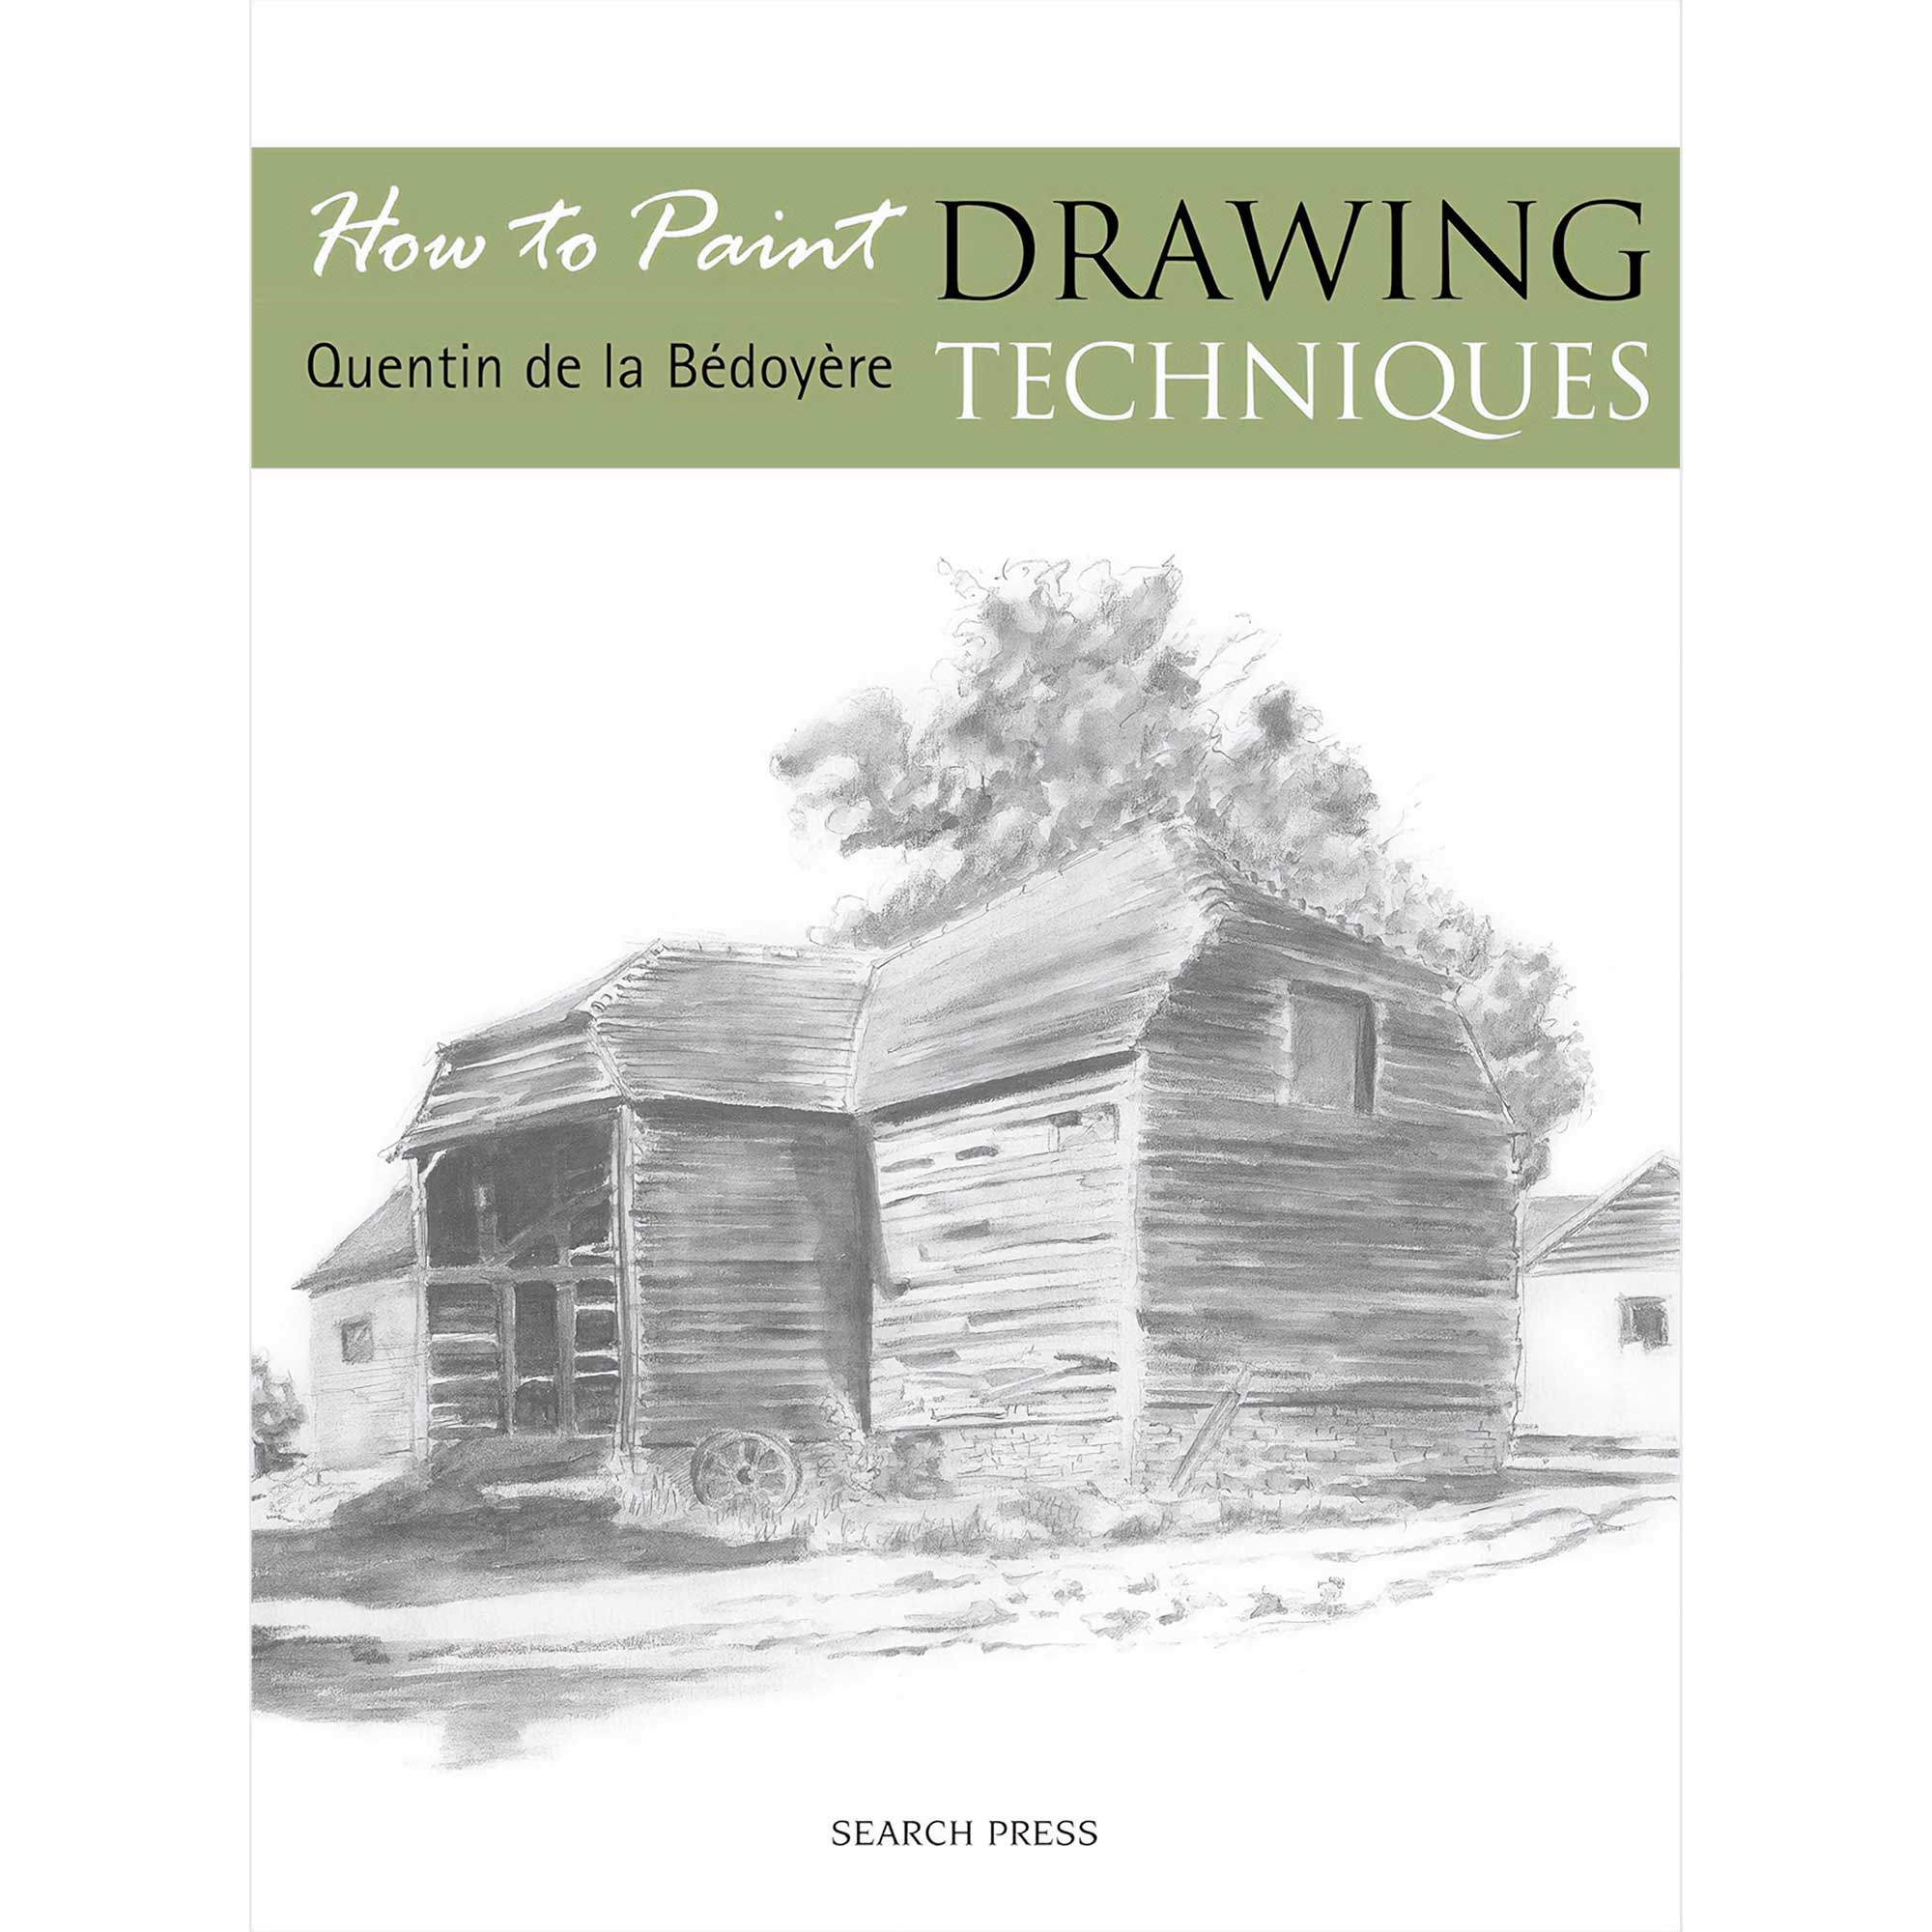 How to Paint: Drawing Techniques - Q. de la Bédoyère